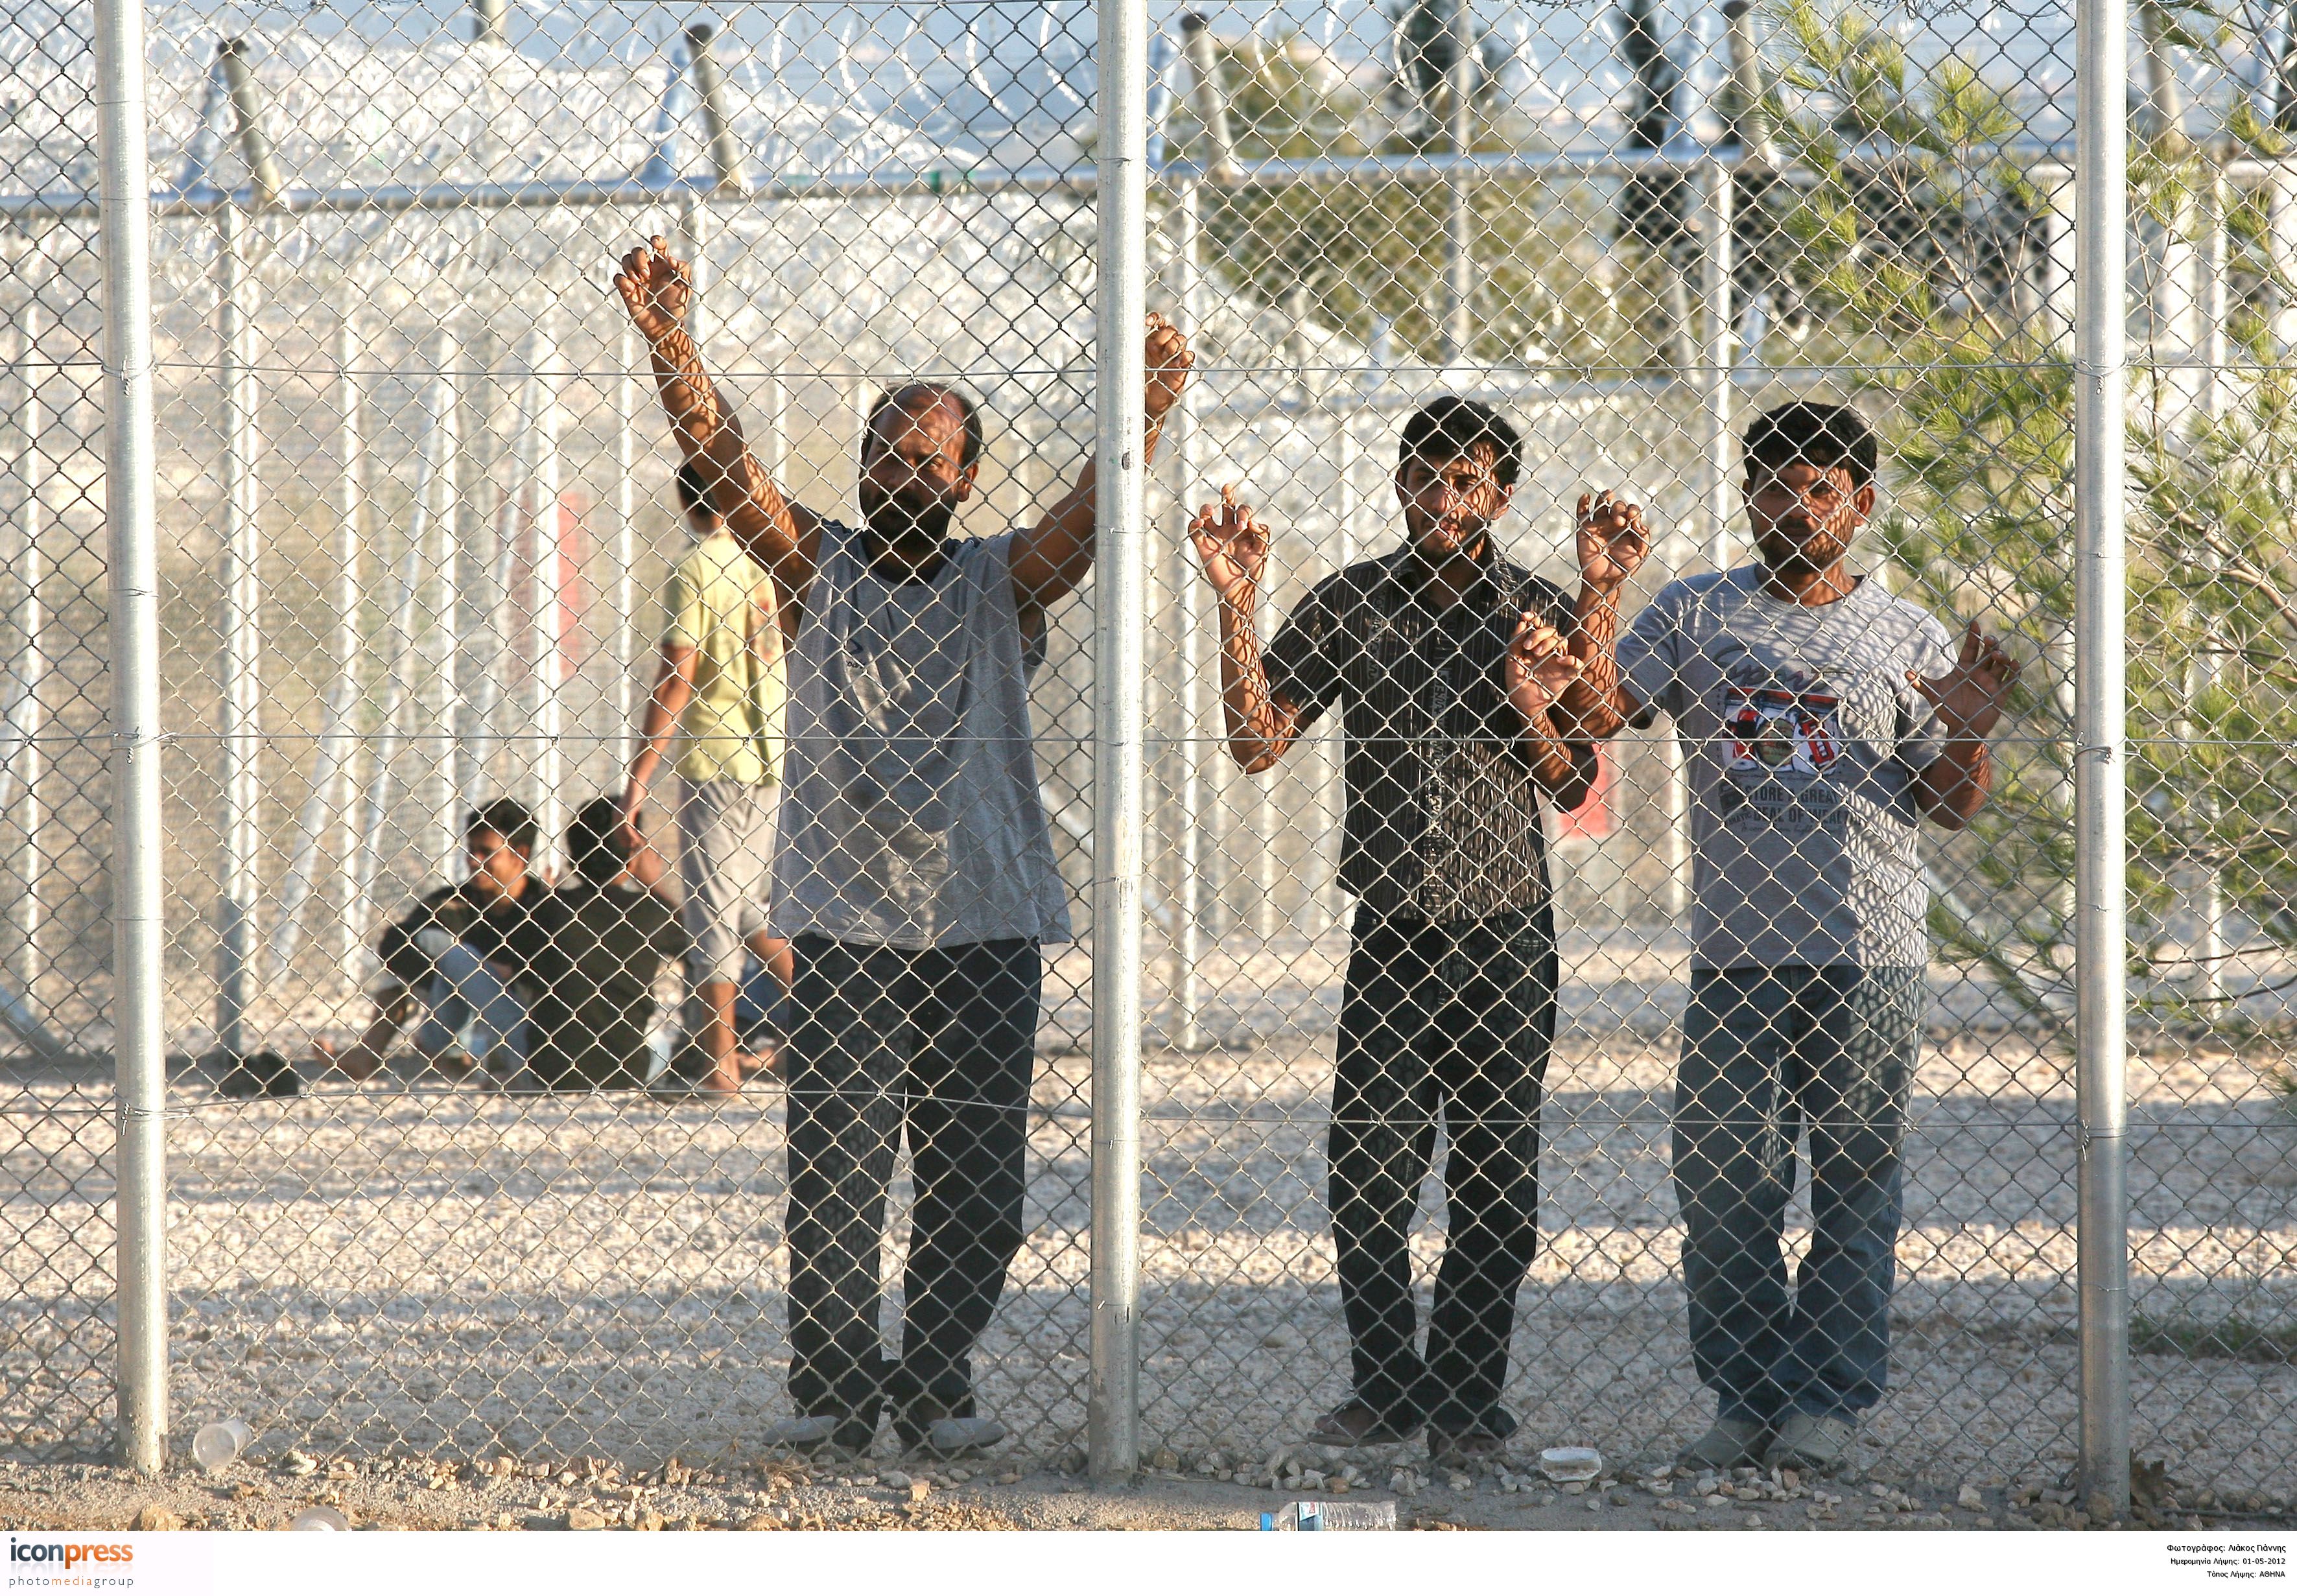 Βασανιστήρια σε μετανάστες που αρνούνται να απελαθούν